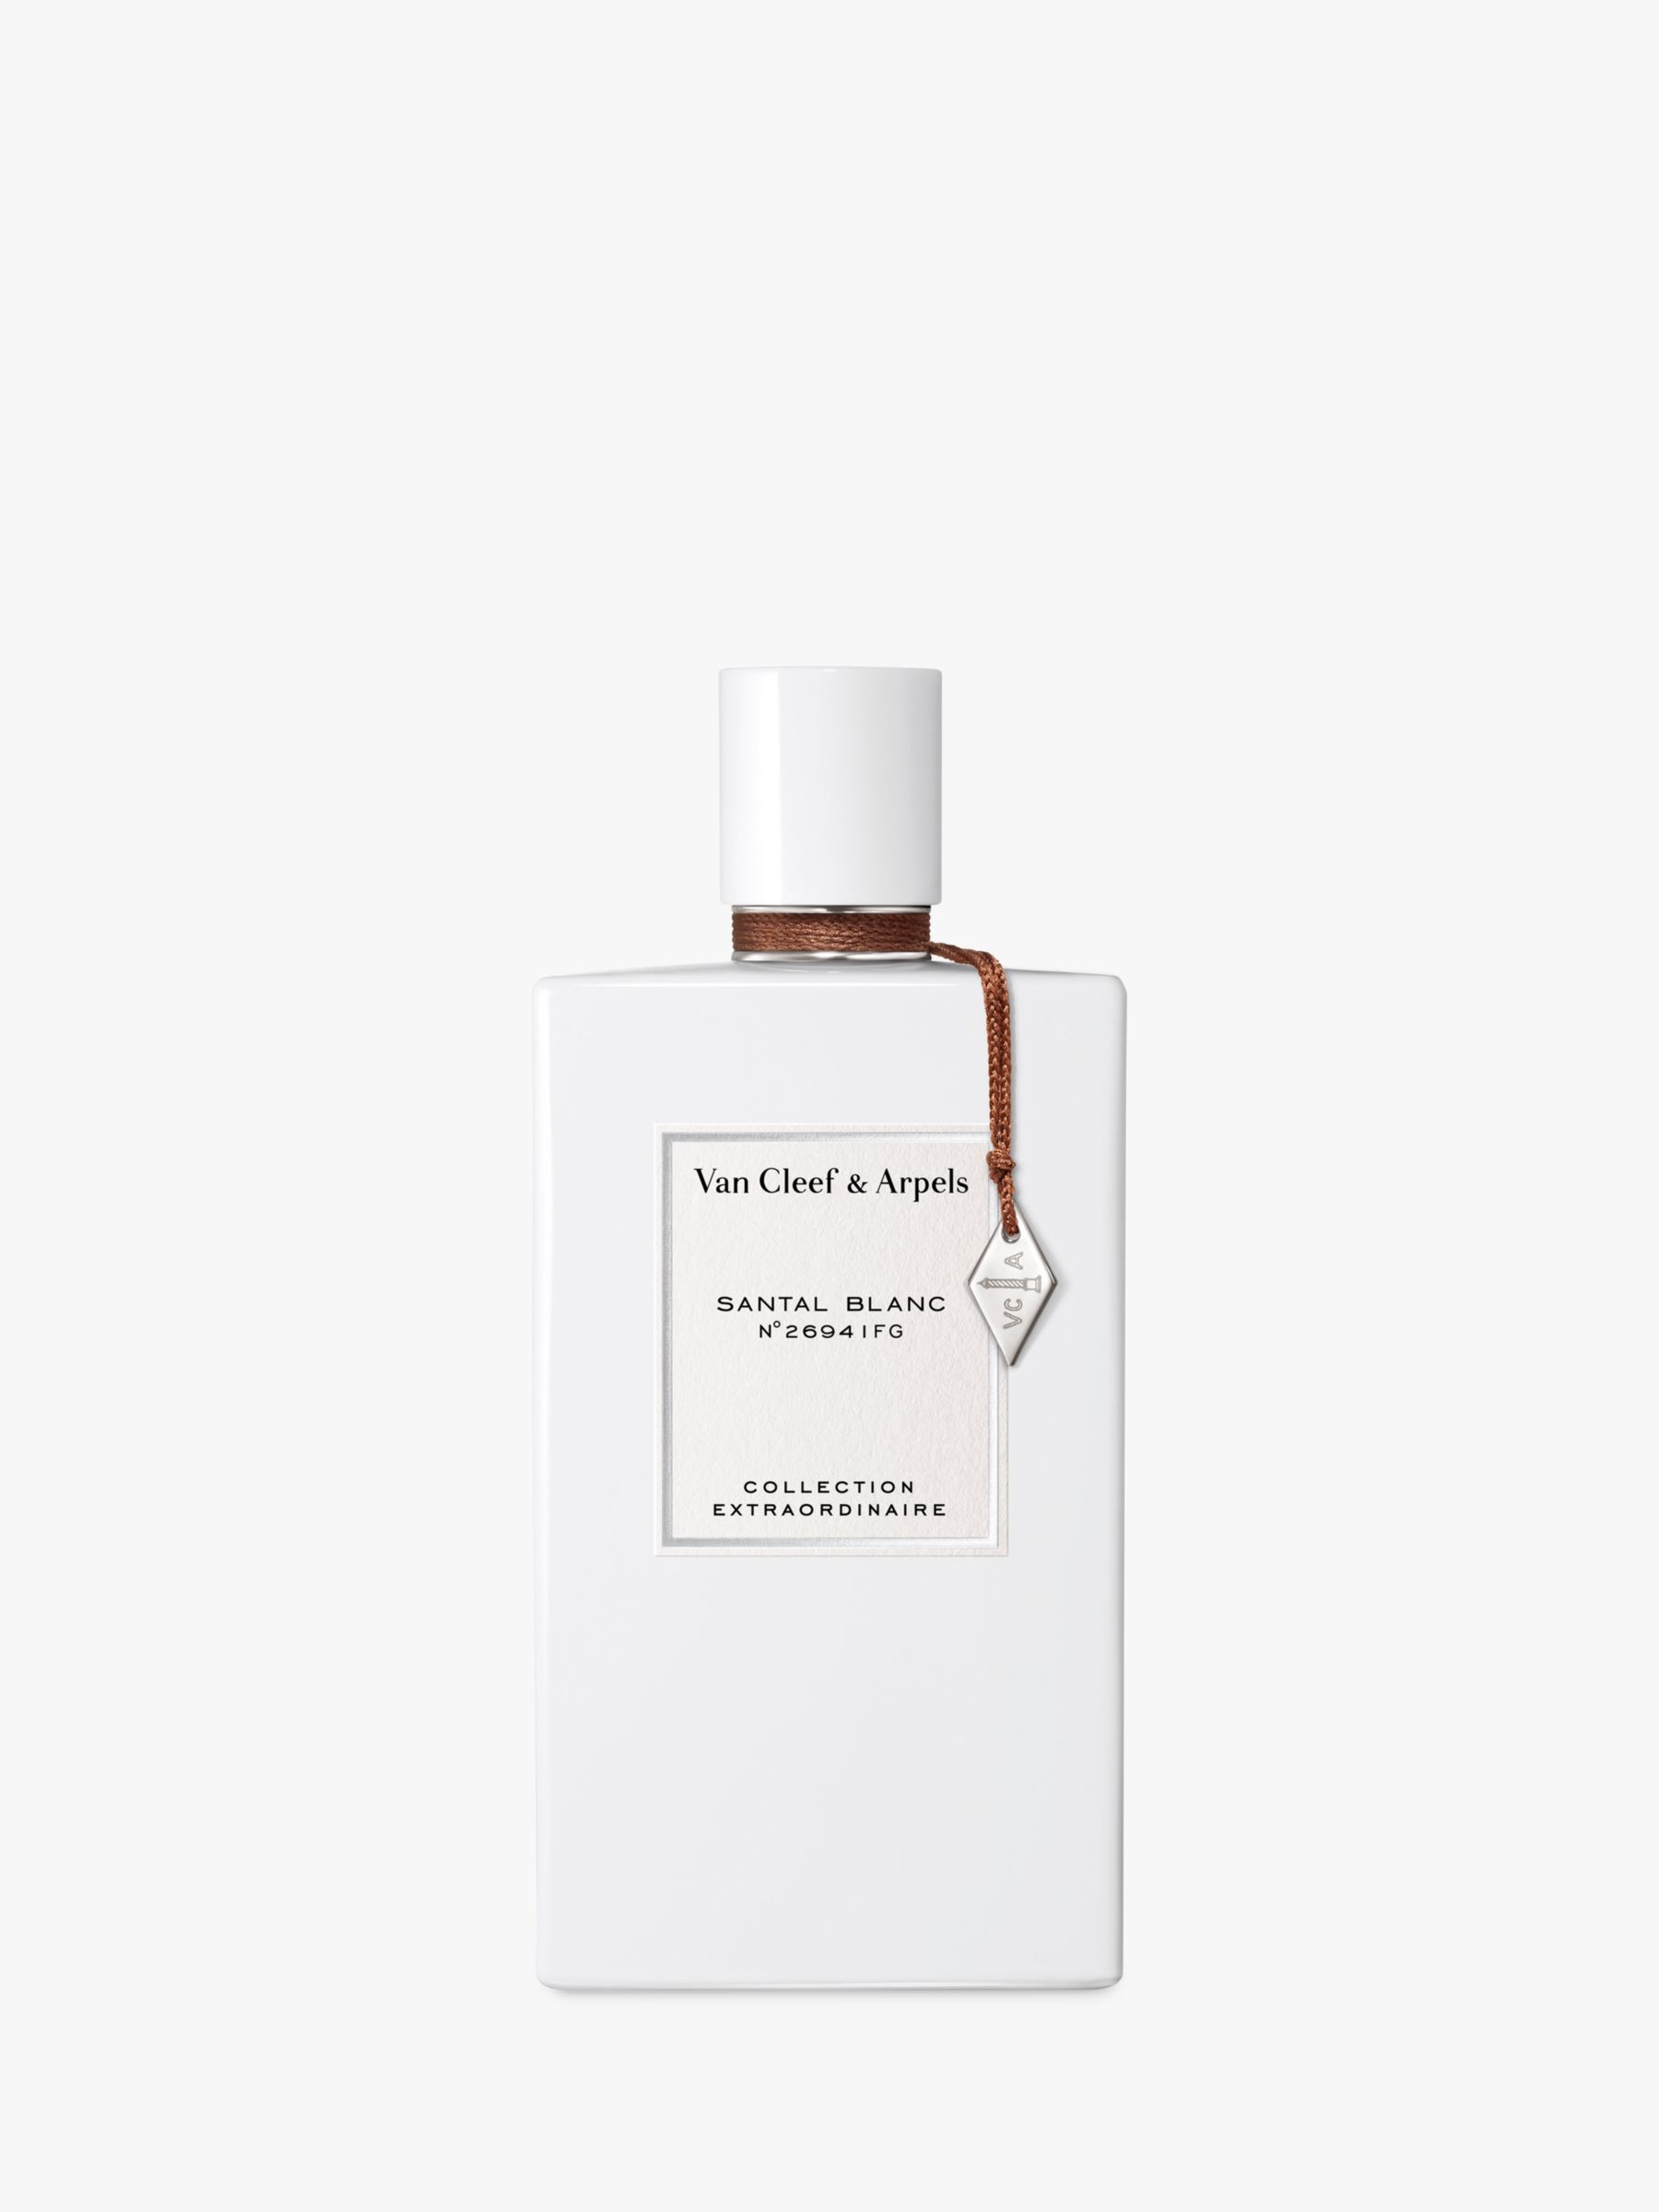 Van Cleef & Arpels Collection Extraordinaire Santal Blanc Eau de Parfum, 75ml 1